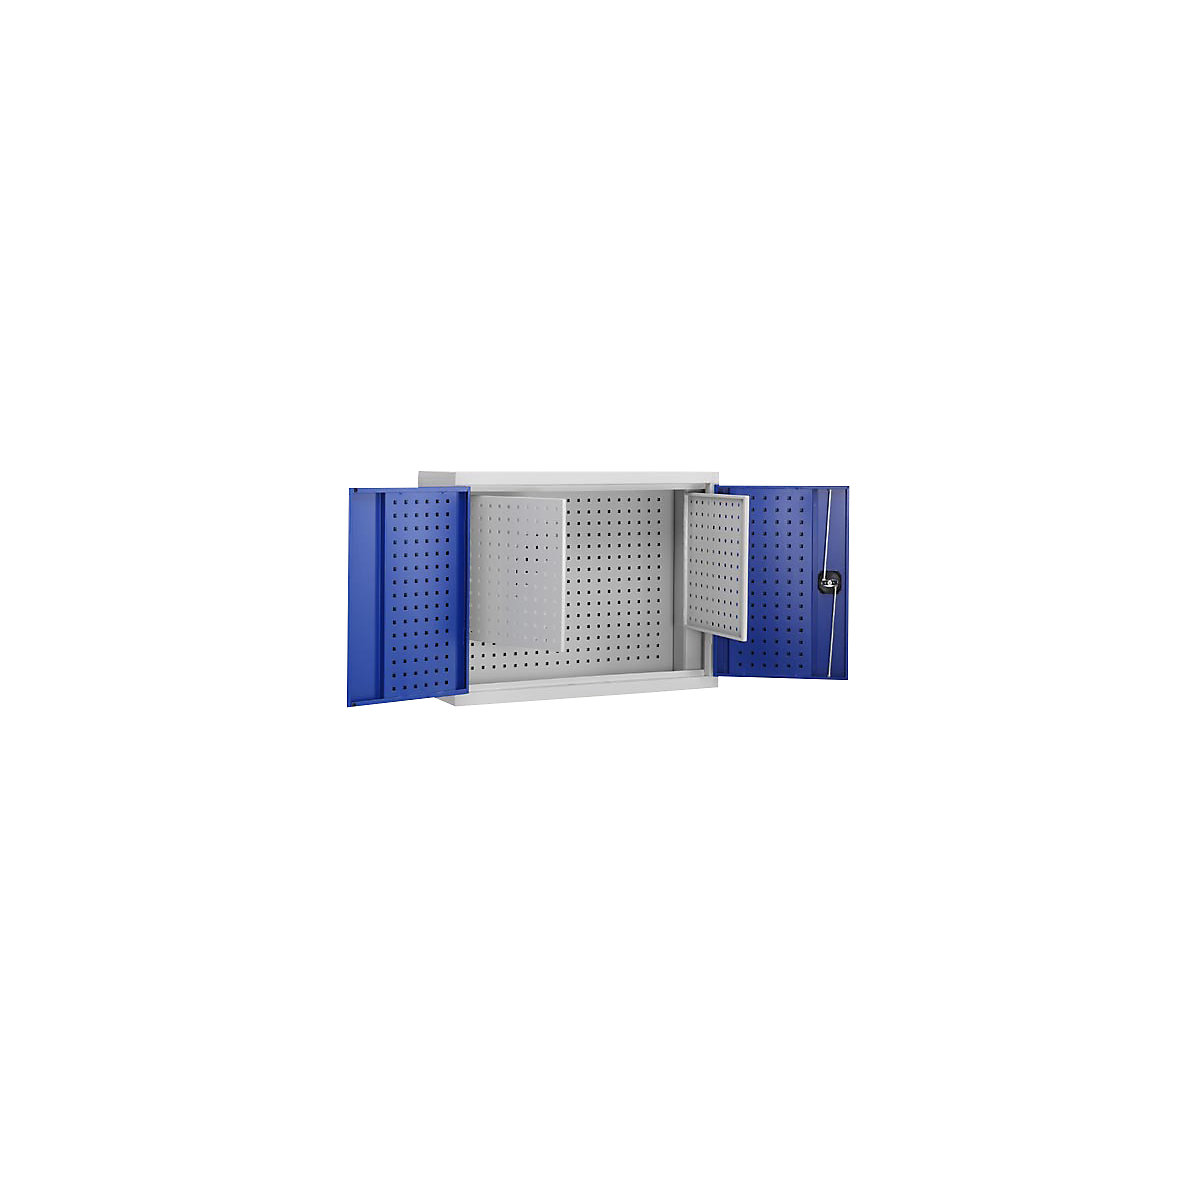 Gereedschapshangkast, deurbinnenzijde van perforatieplaat met 2 extra platen, gentiaanblauw RAL 5010-11